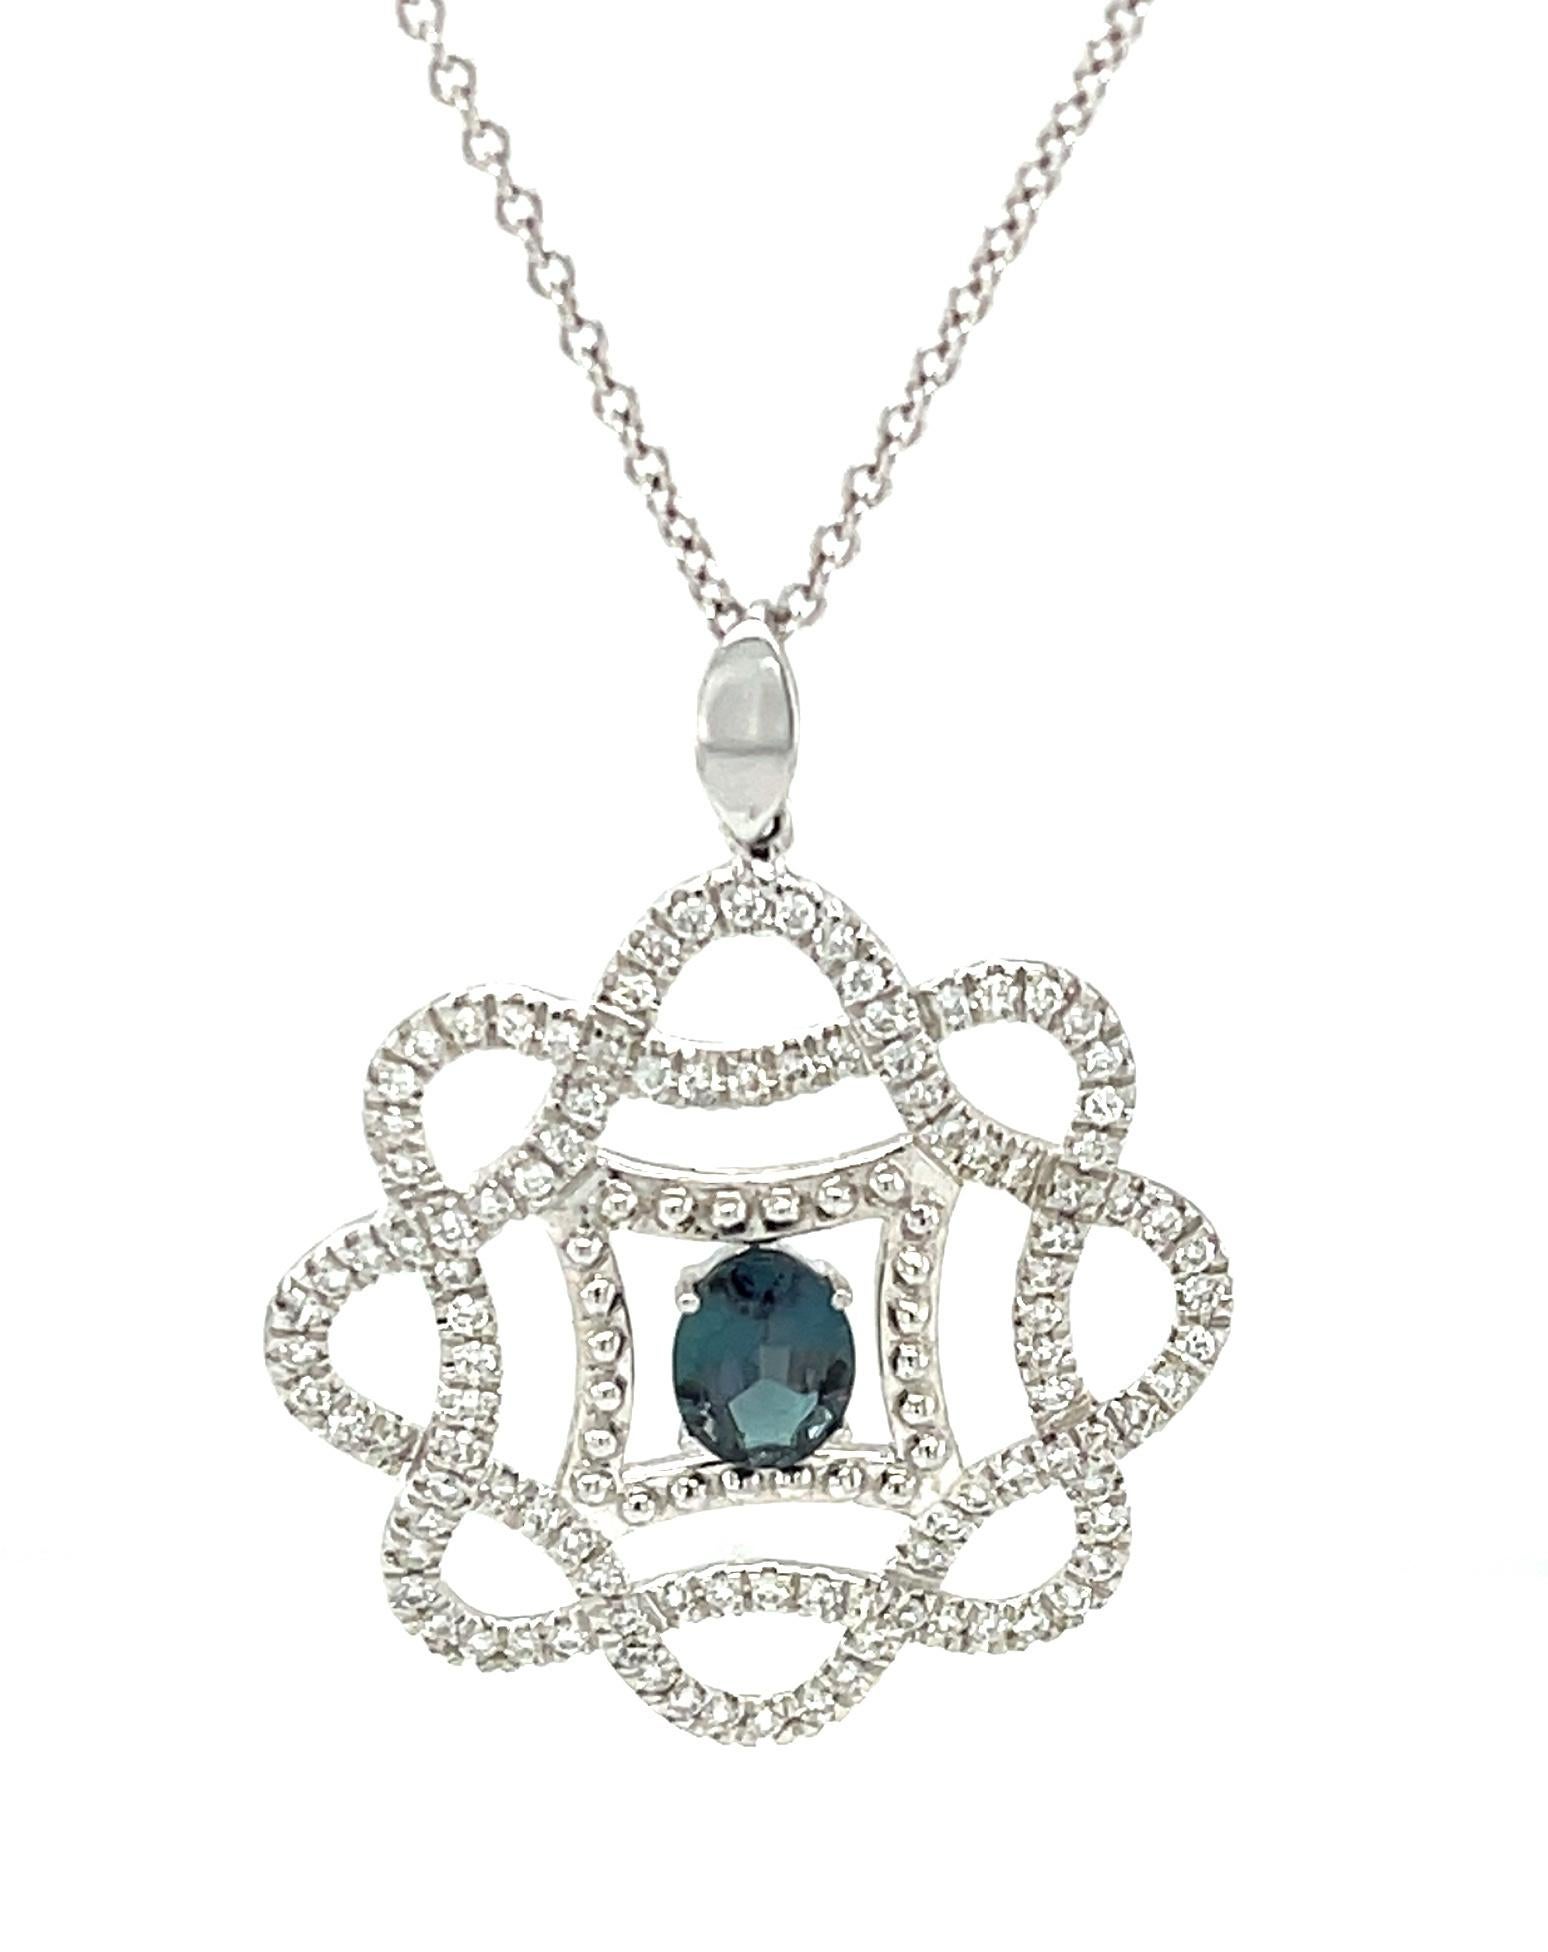 Diese exquisite Halskette enthält einen atemberaubenden natürlichen Alexandriten mit einem Gewicht von 0,53 Karat und einem herrlichen Farbwechsel! Der Alexandrit, der Geburtsstein des Monats Juni, gehört zu den seltensten Edelsteinen der Erde. Er